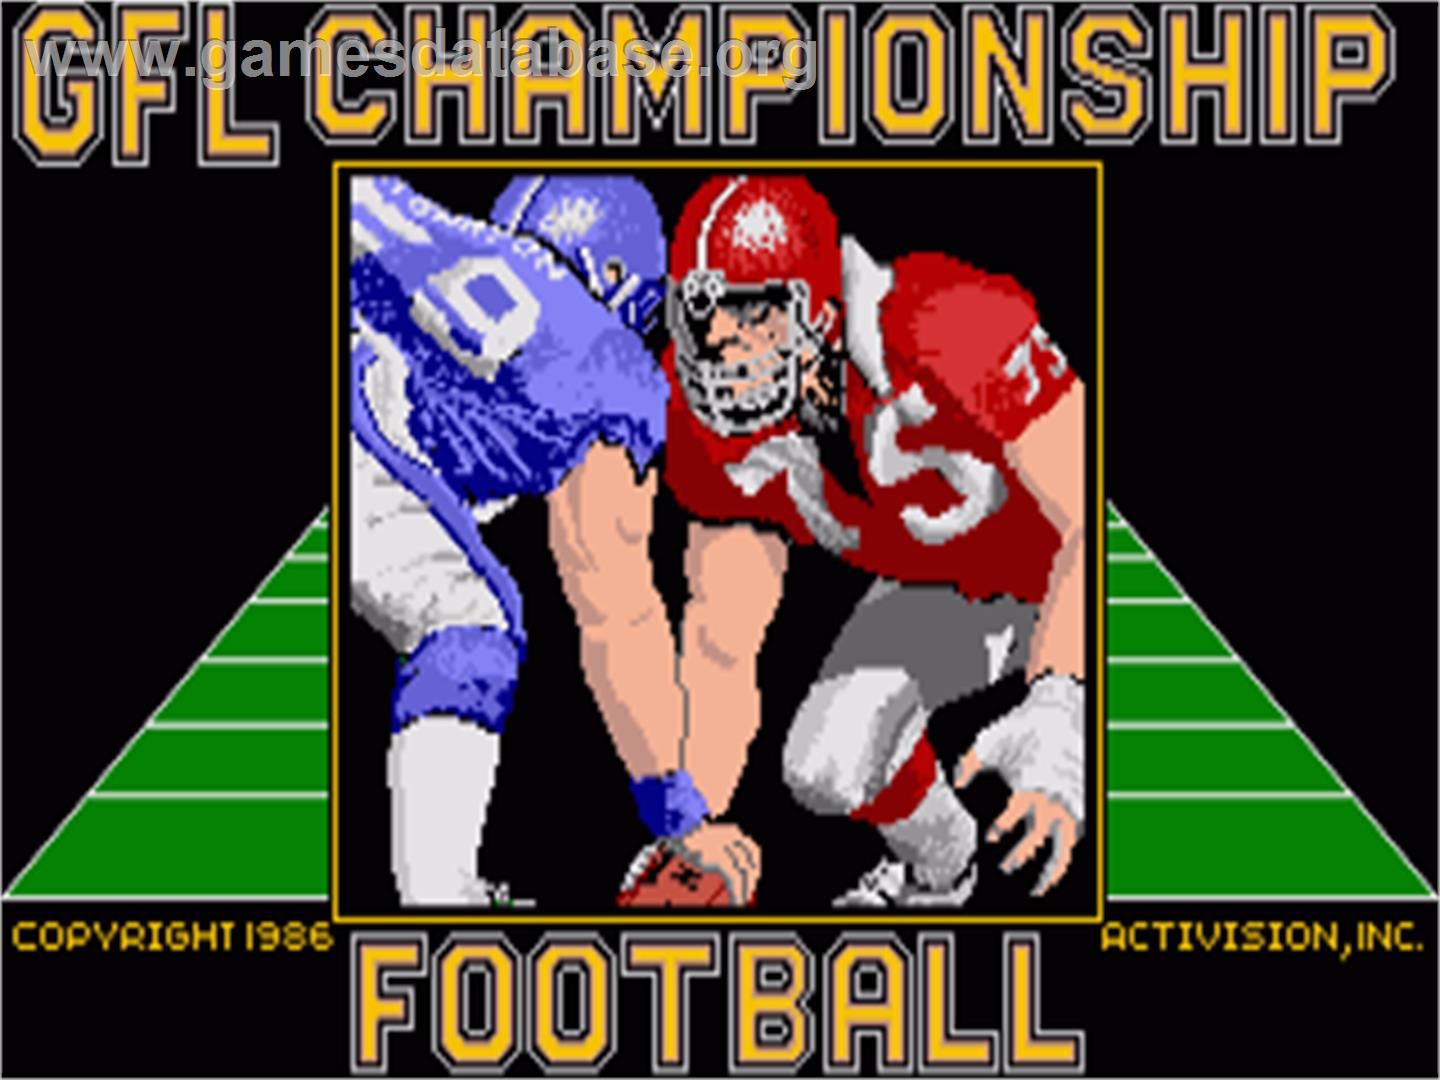 GFL Championship Football - Commodore Amiga - Artwork - Title Screen